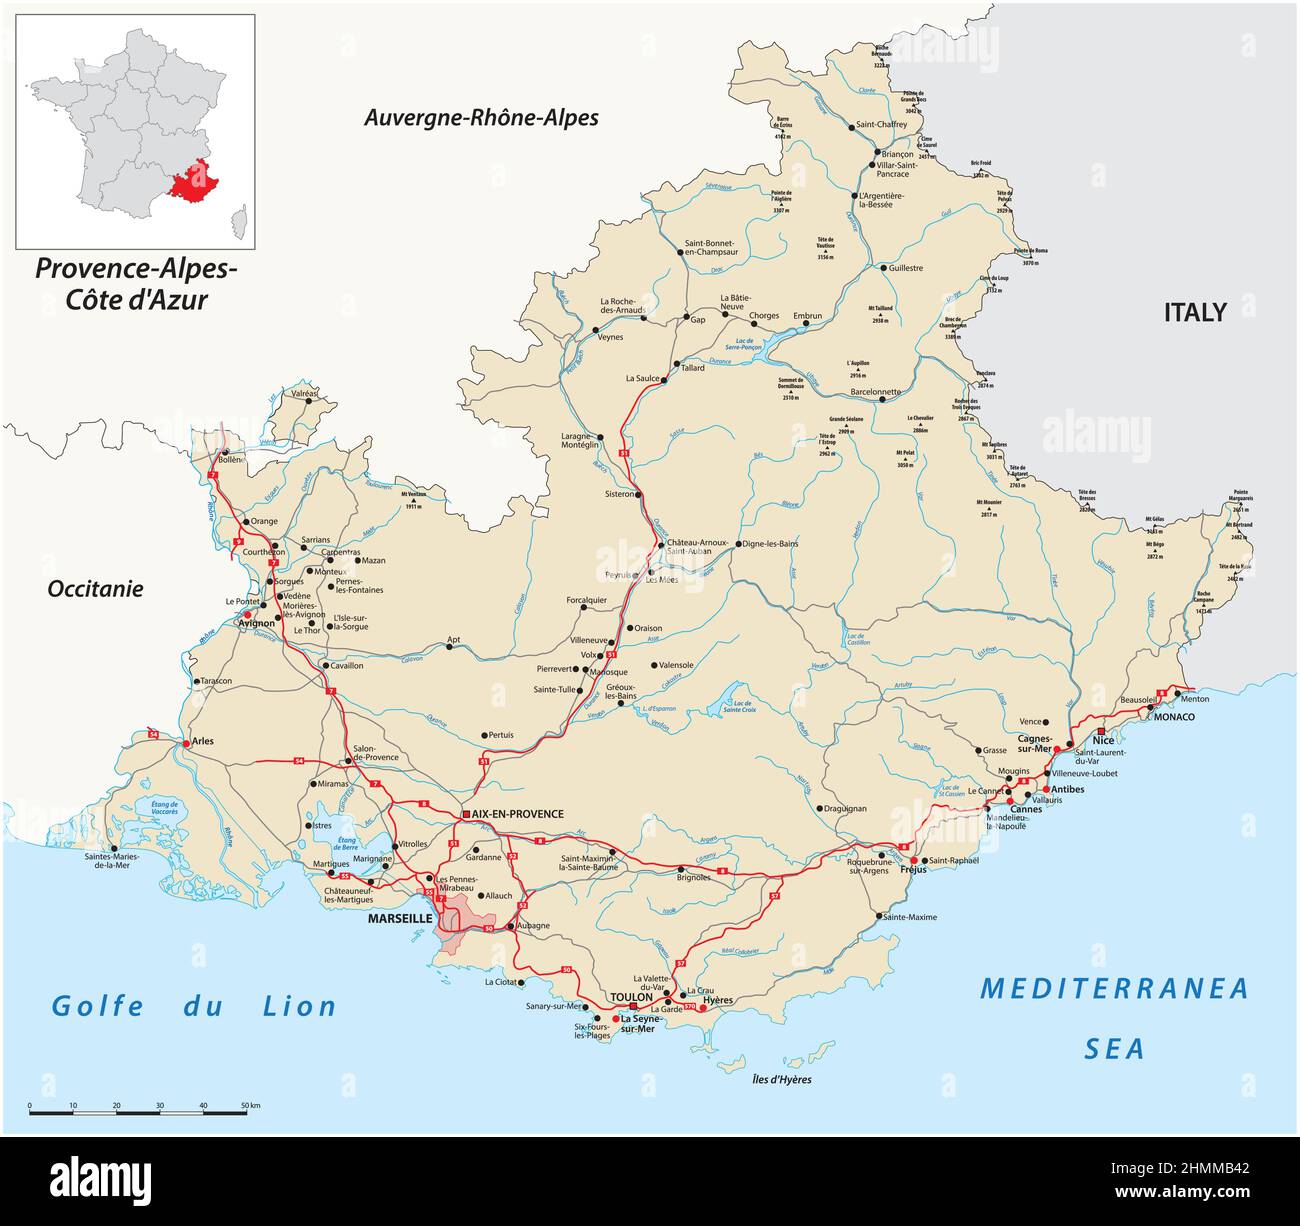 Carte routière de la région française de Provence-Alpes-Côte d'Azur Illustration de Vecteur